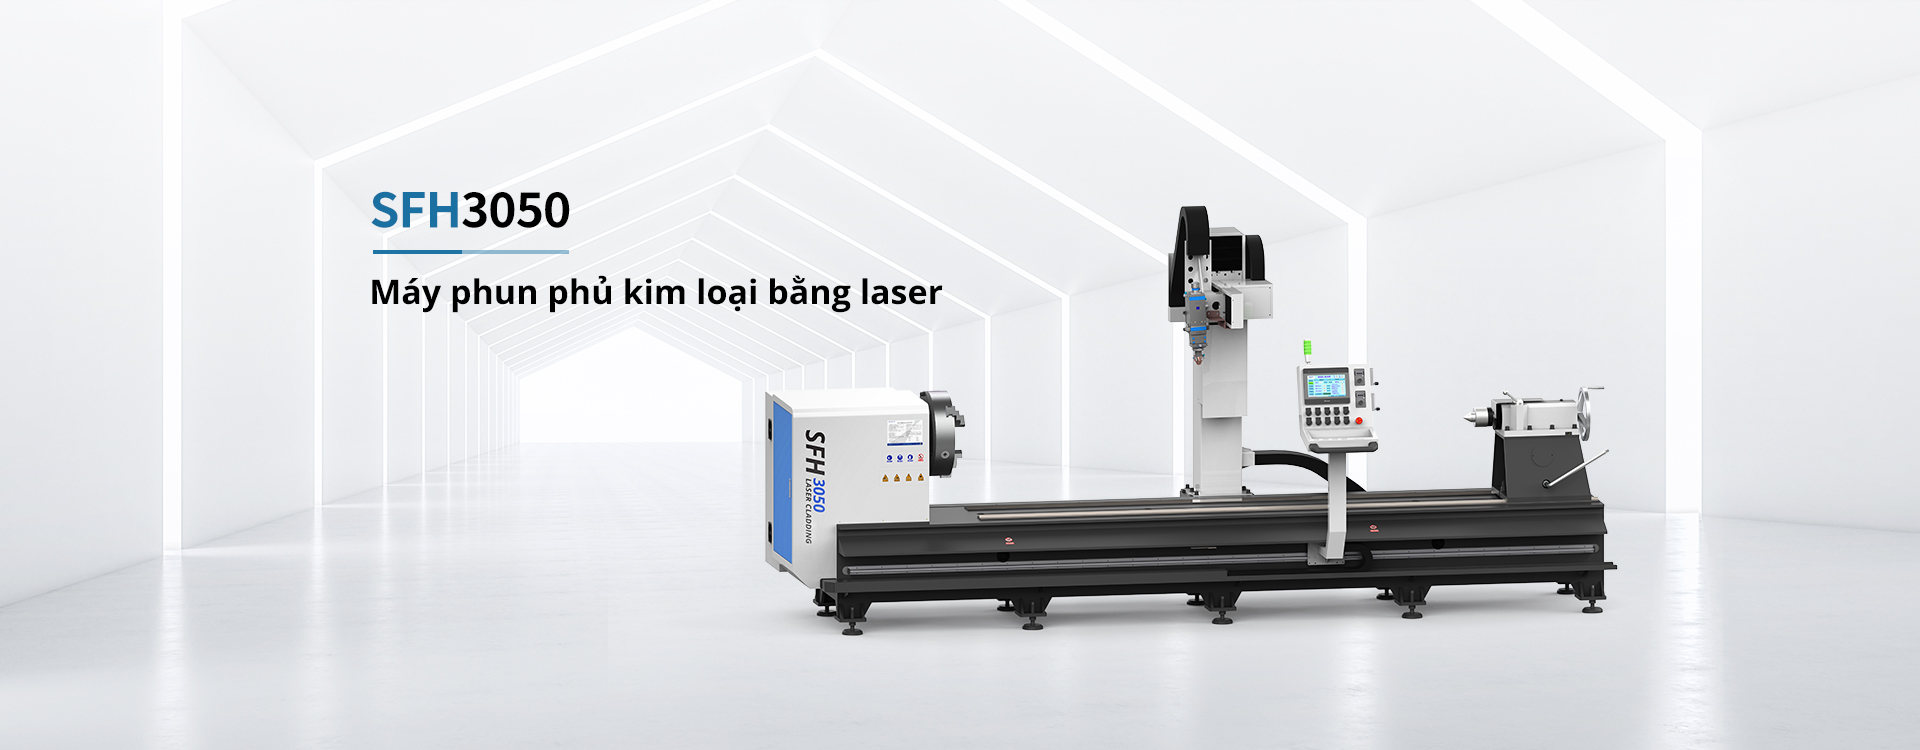 Nhà sản xuất máy ốp laser